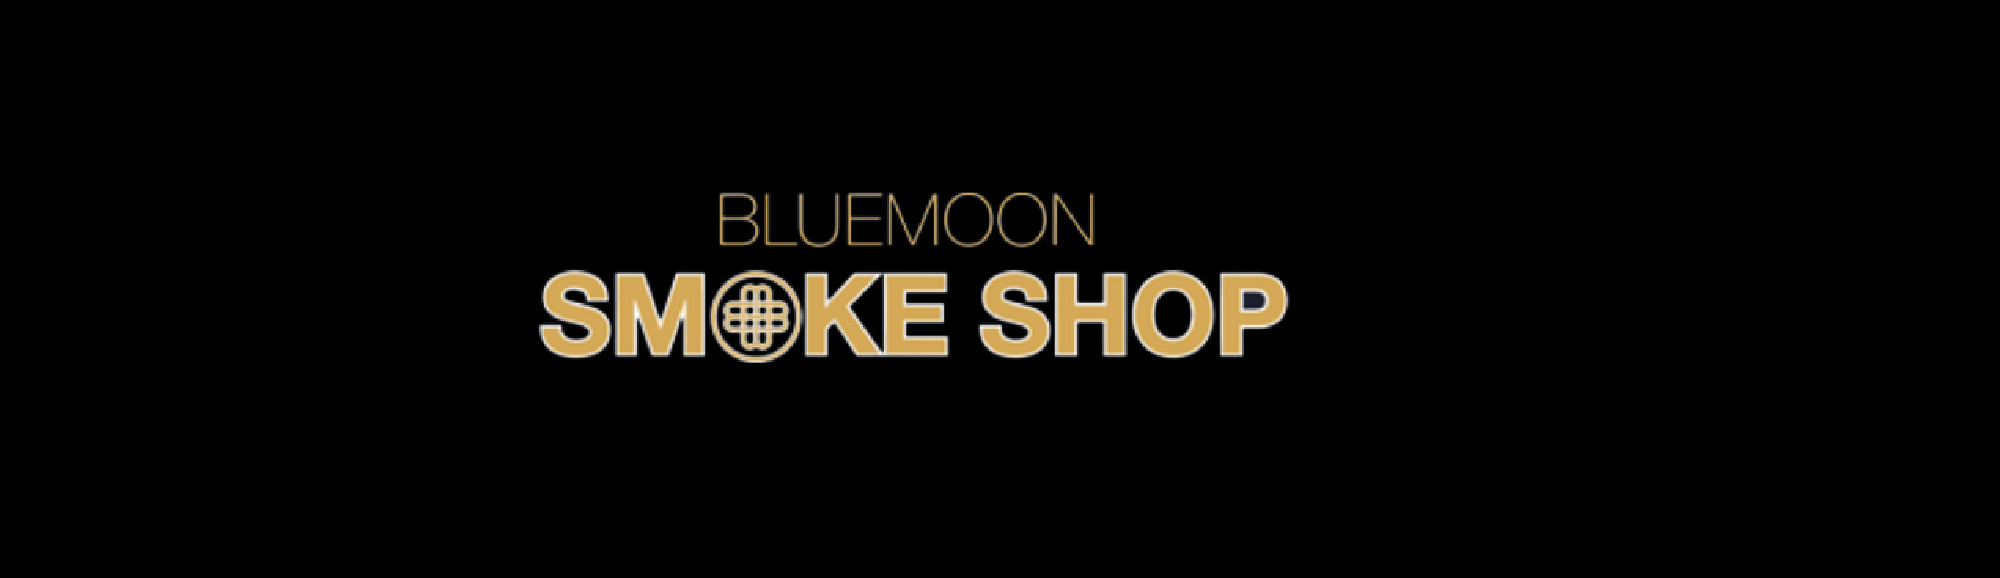 image of bluemoon smoke shop in boston ma